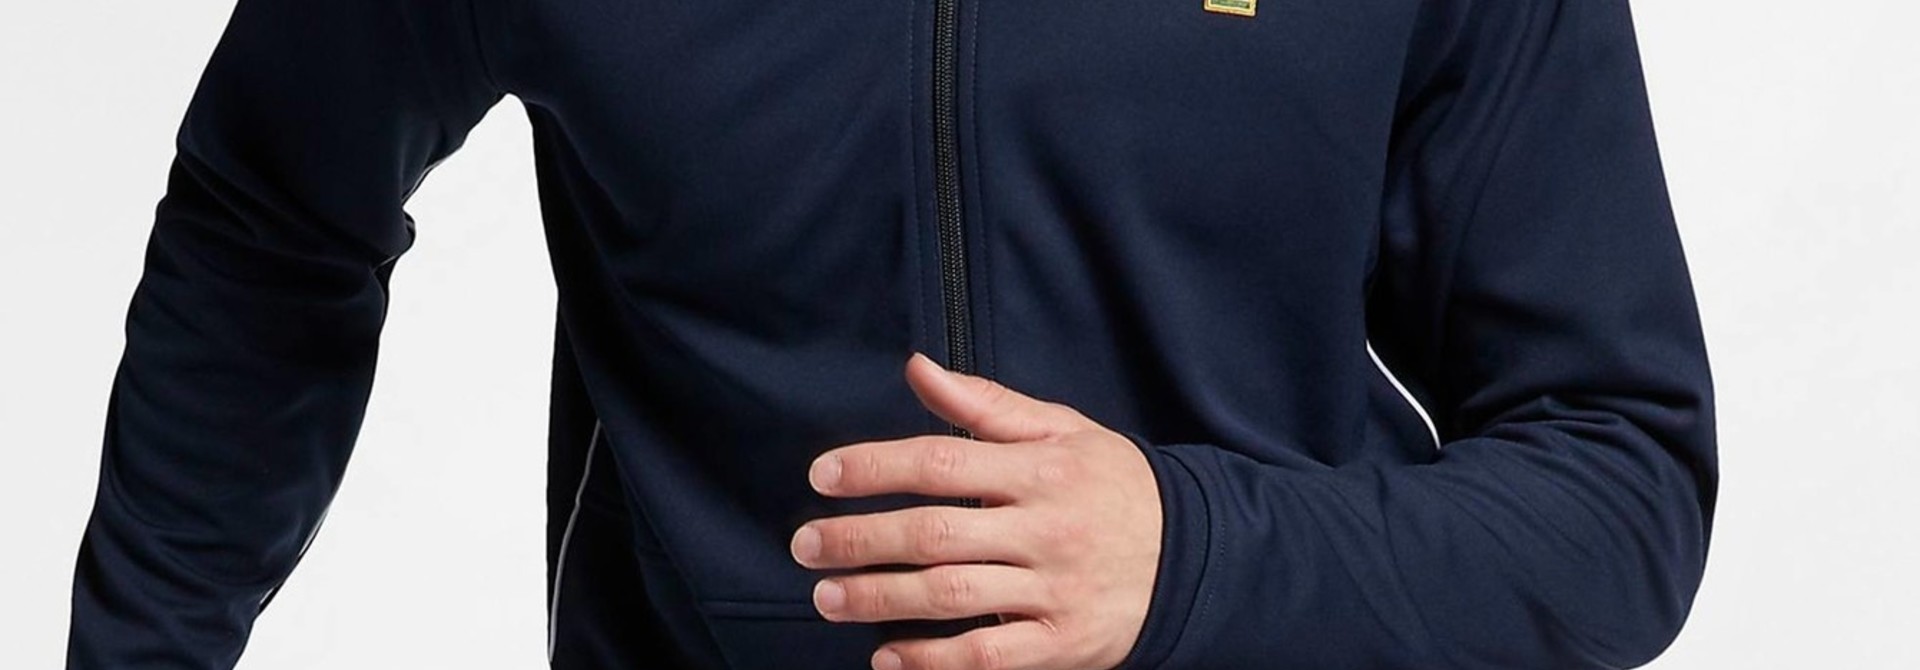 Men's tennis jacket